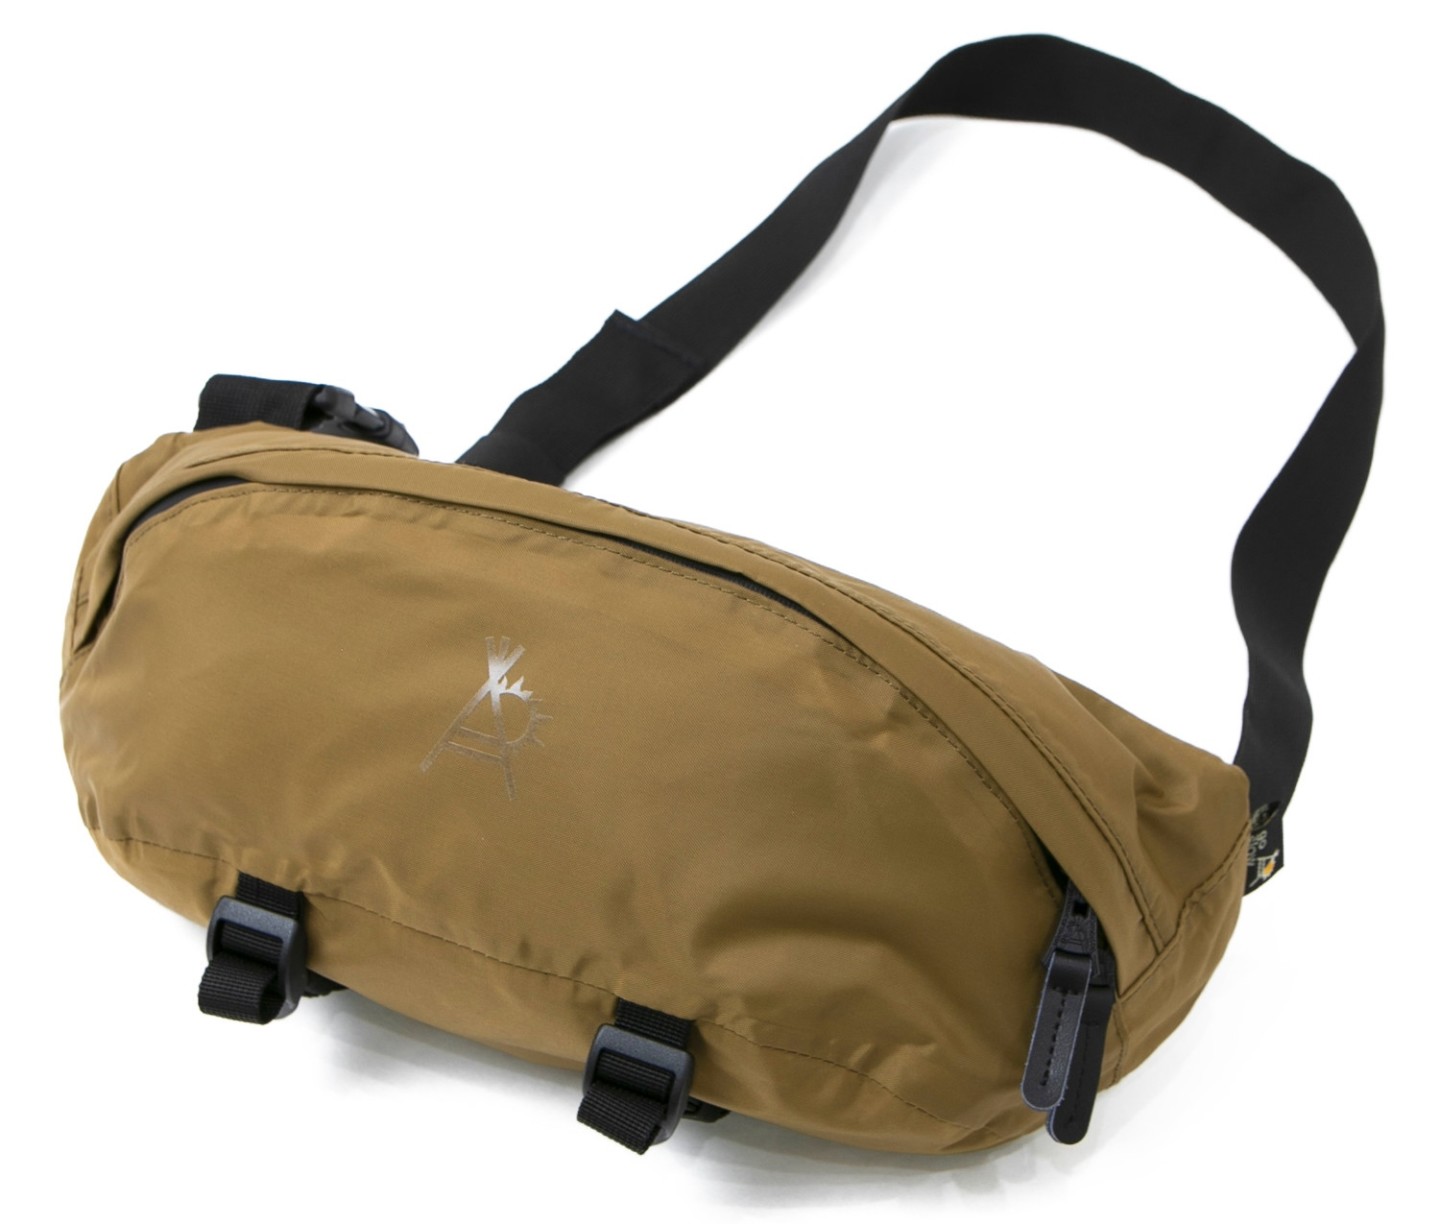 ゴースローキャラバンから、防水仕様の硬派な機能的バッグシリーズが 